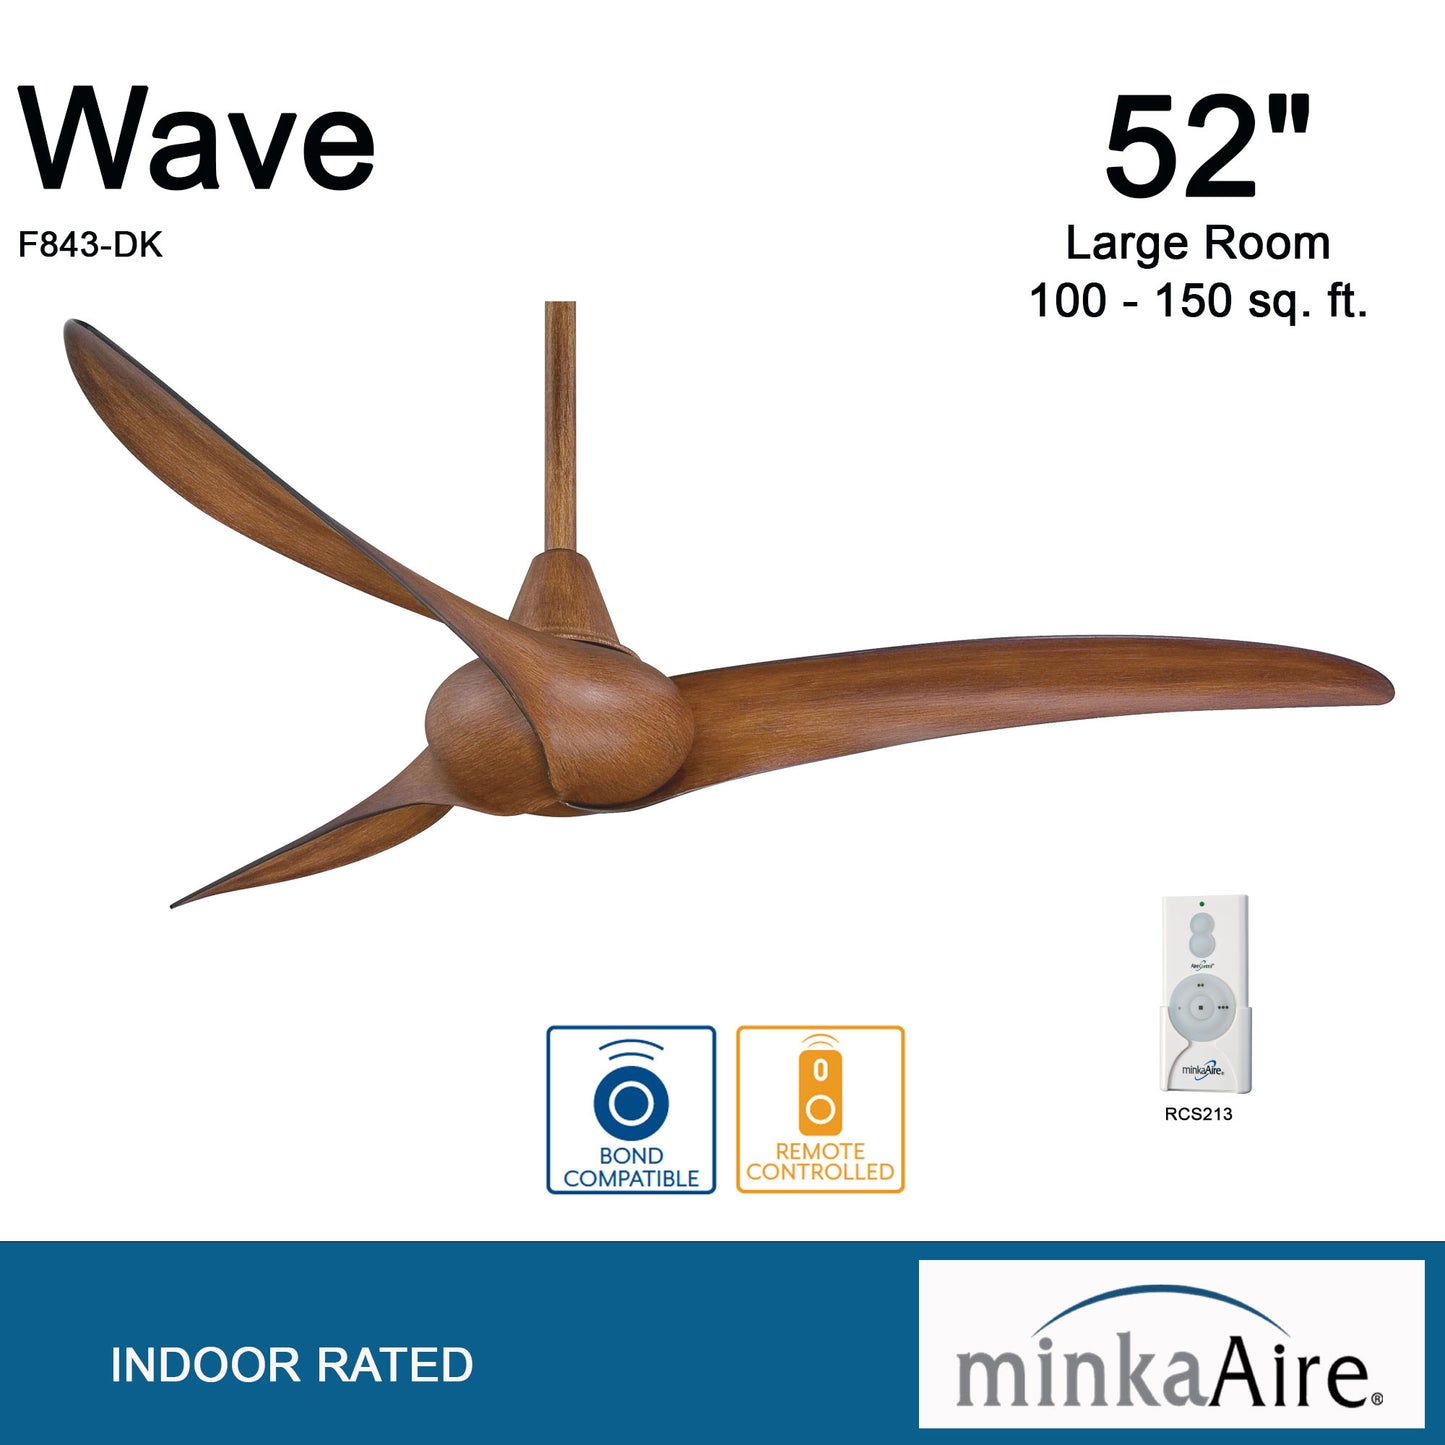 Minka Aire Wave シーリングファン【F843-DK】